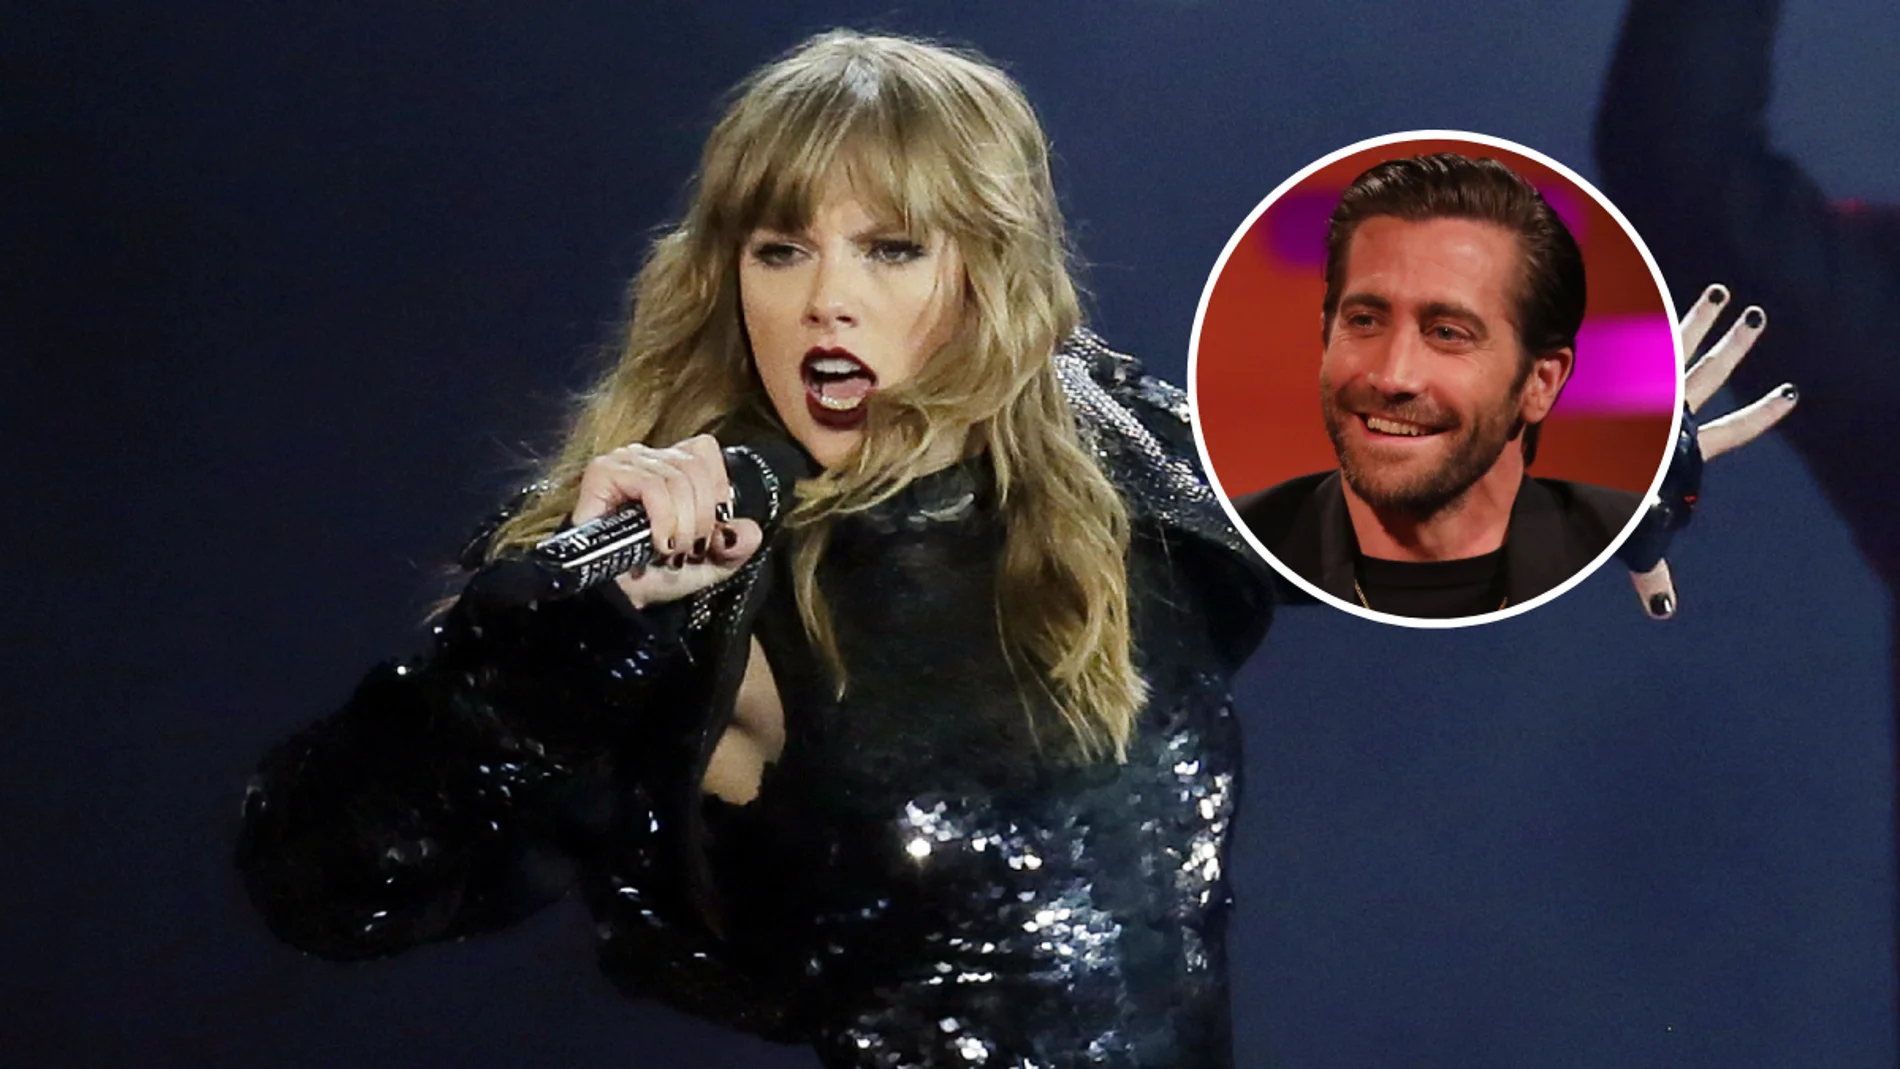 La historia de 'All Too Well': ¿qué pasó entre Jake Gyllenhaal y Taylor Swift?